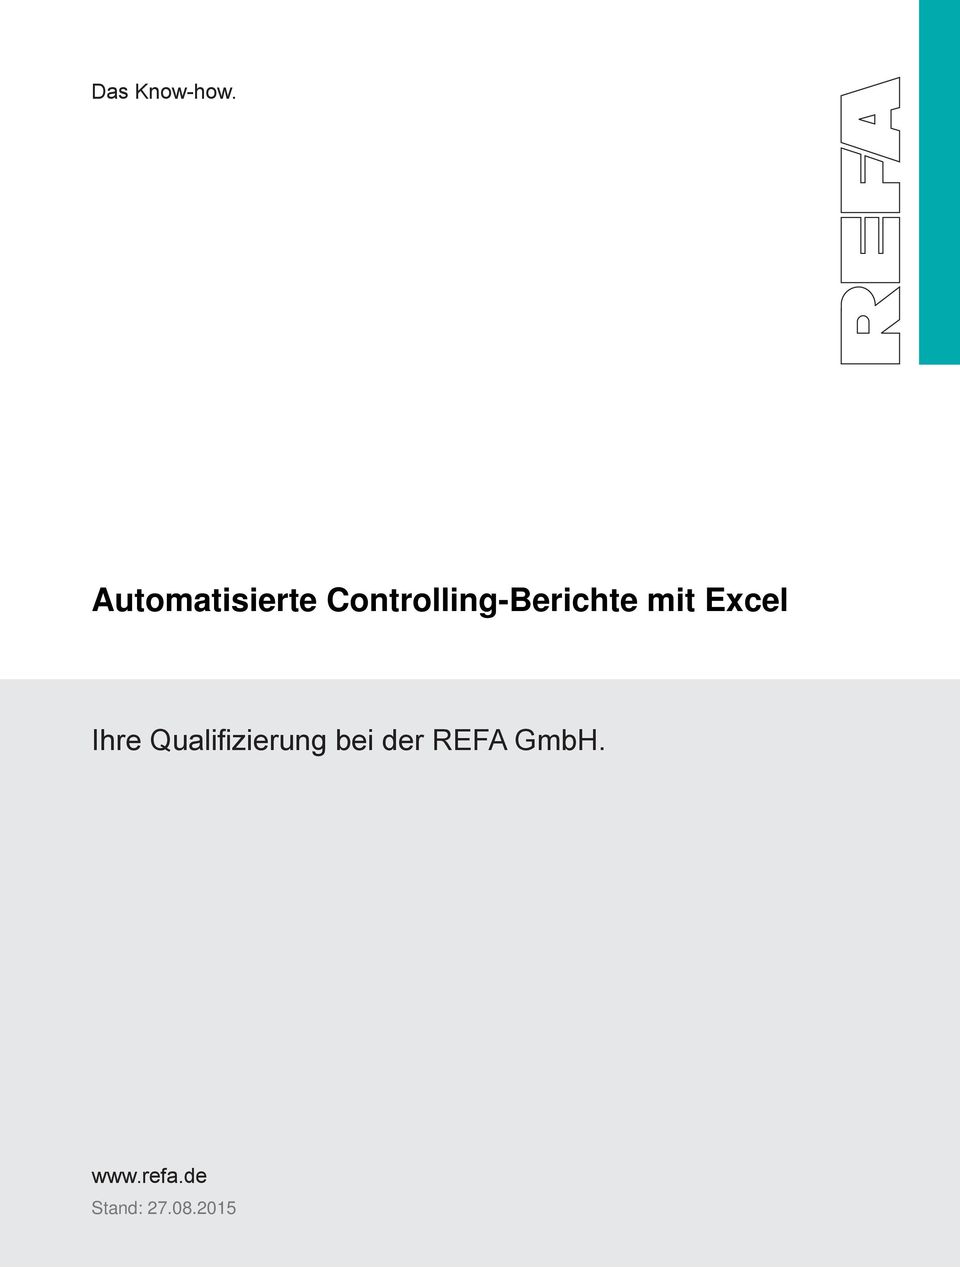 REFA GmbH. Experten bringen demografische Herausforderungen auf den Punkt.